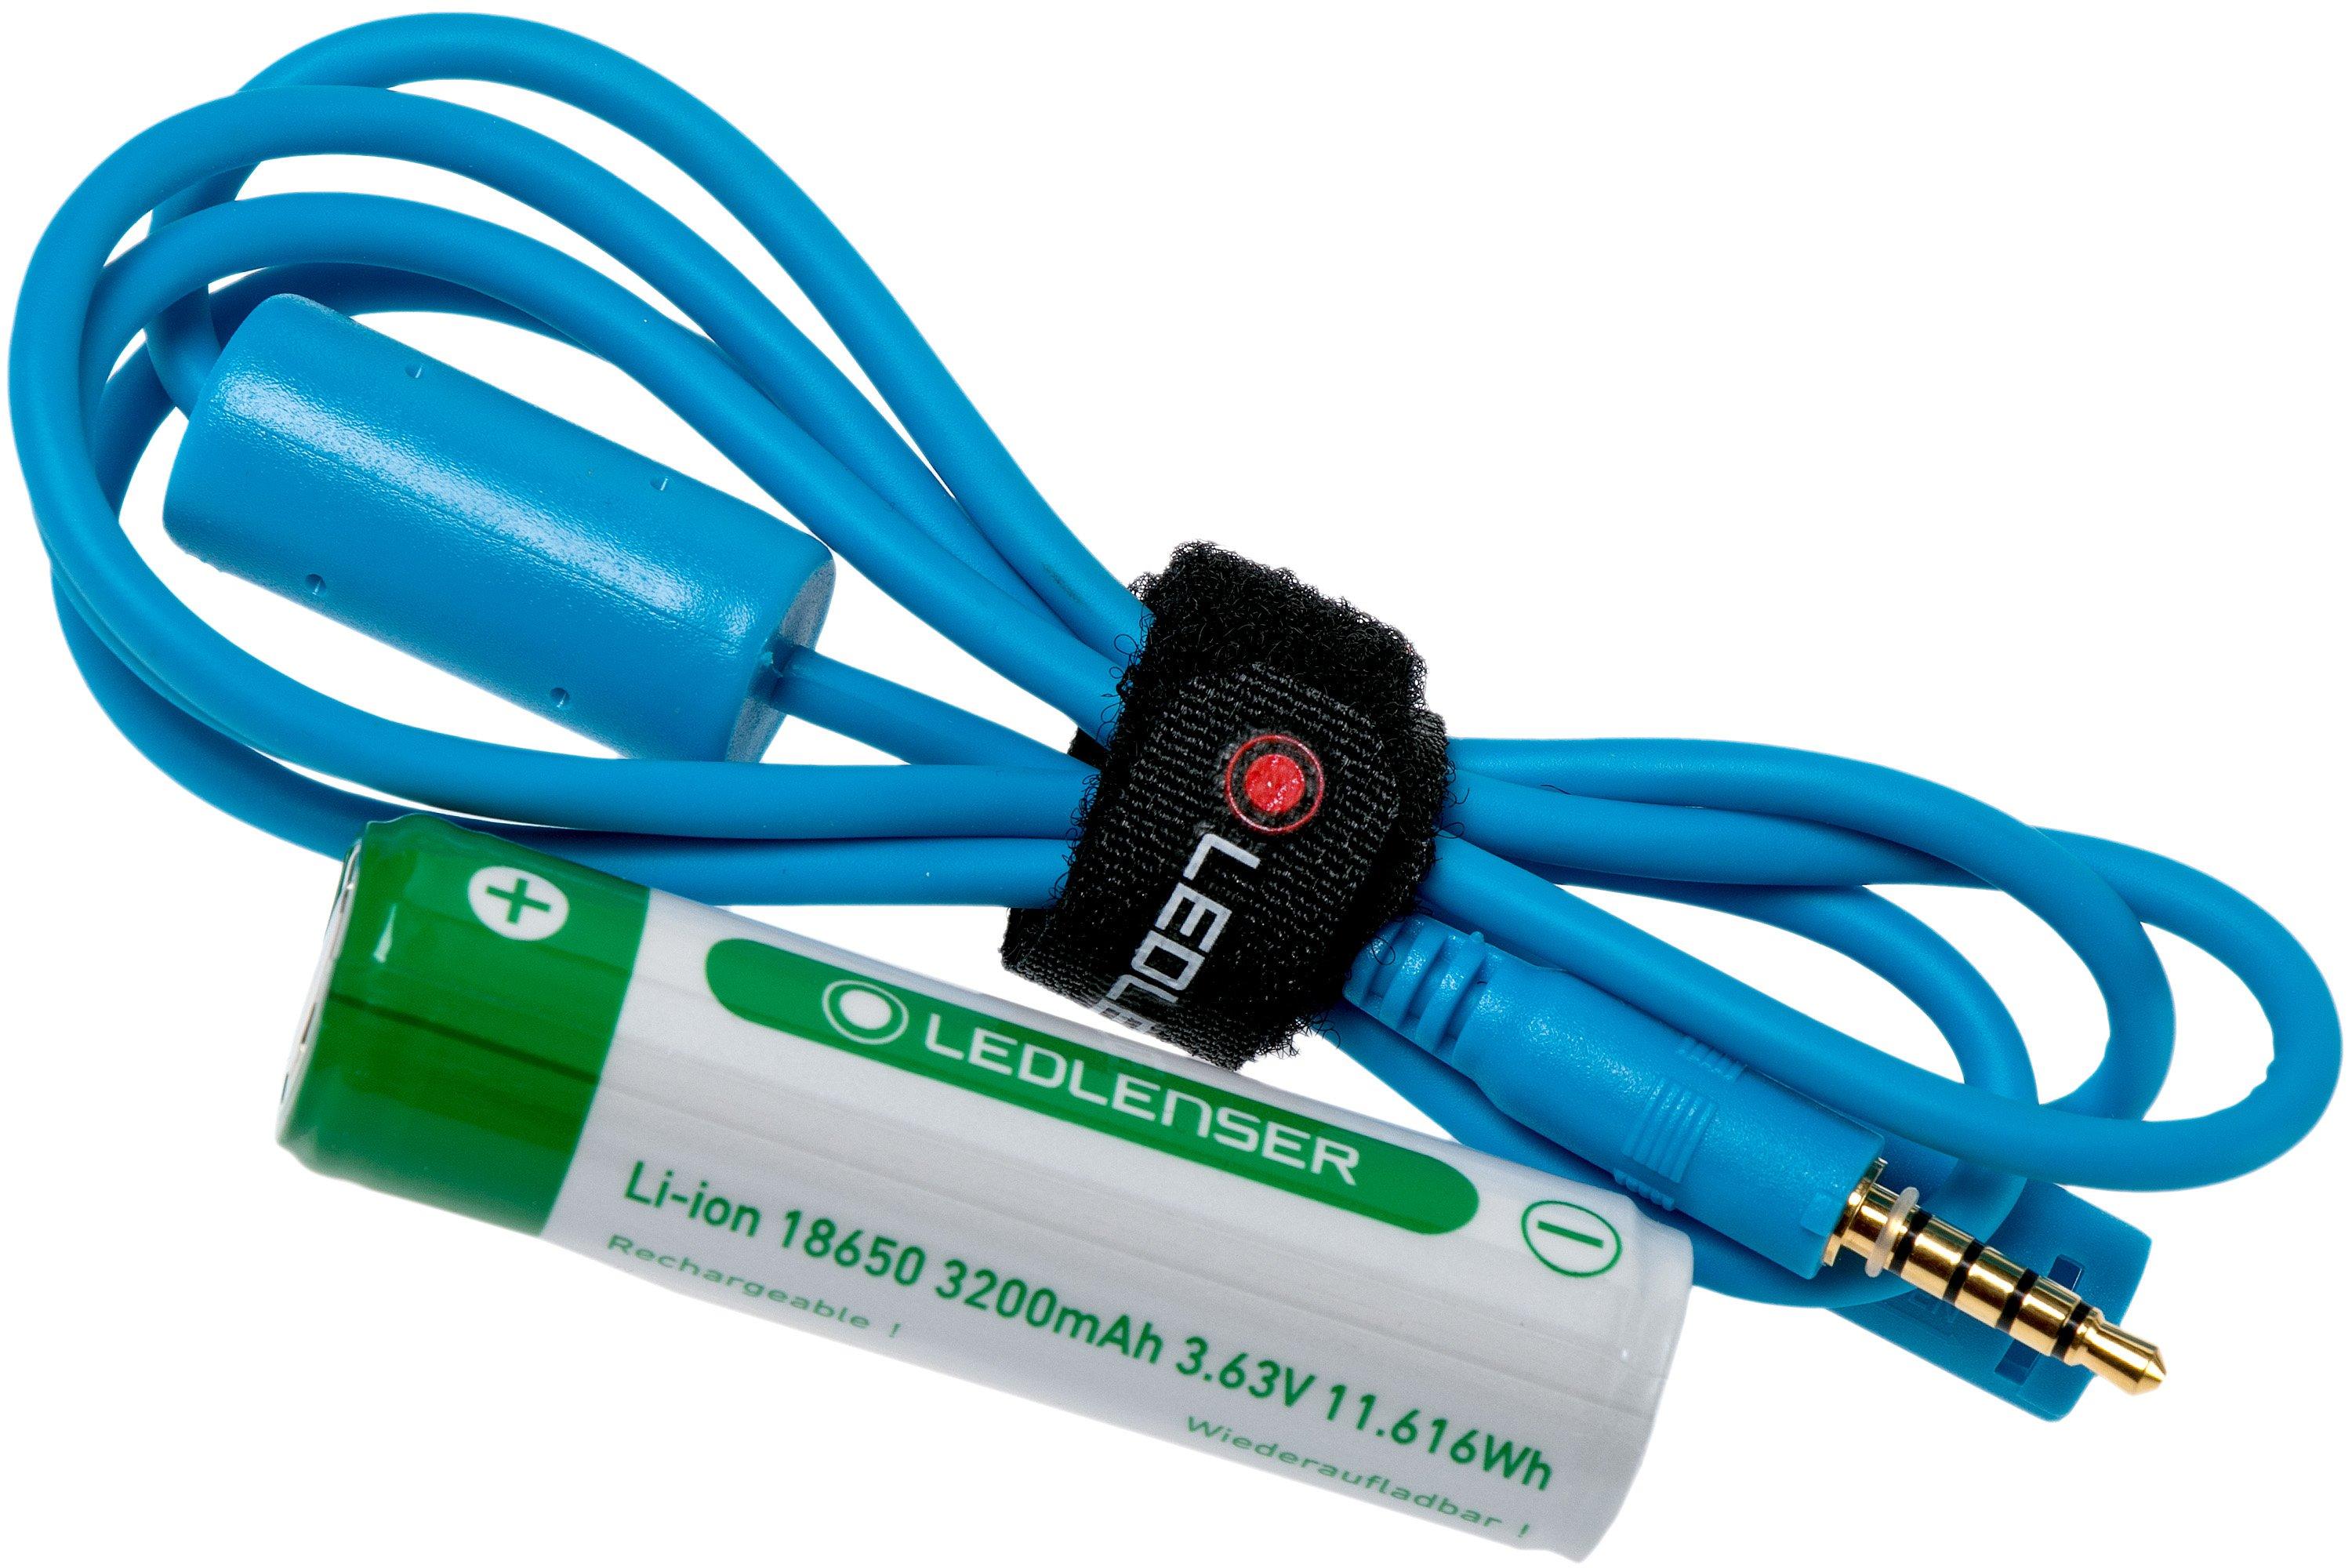 ZWOOS Lampe Frontale LED Rechargeable USB, Lampe Frontale Super Lumineuse  600 Lumens avec Capteur 230°, 4 Modes d'éclairage et étanche IPX4 - Parfait  pour les Expéditions, la pêche et la Course (2PC) 